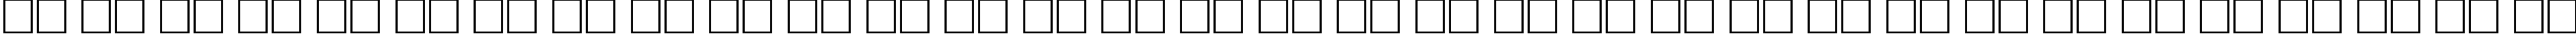 Пример написания русского алфавита шрифтом Cricket Bold